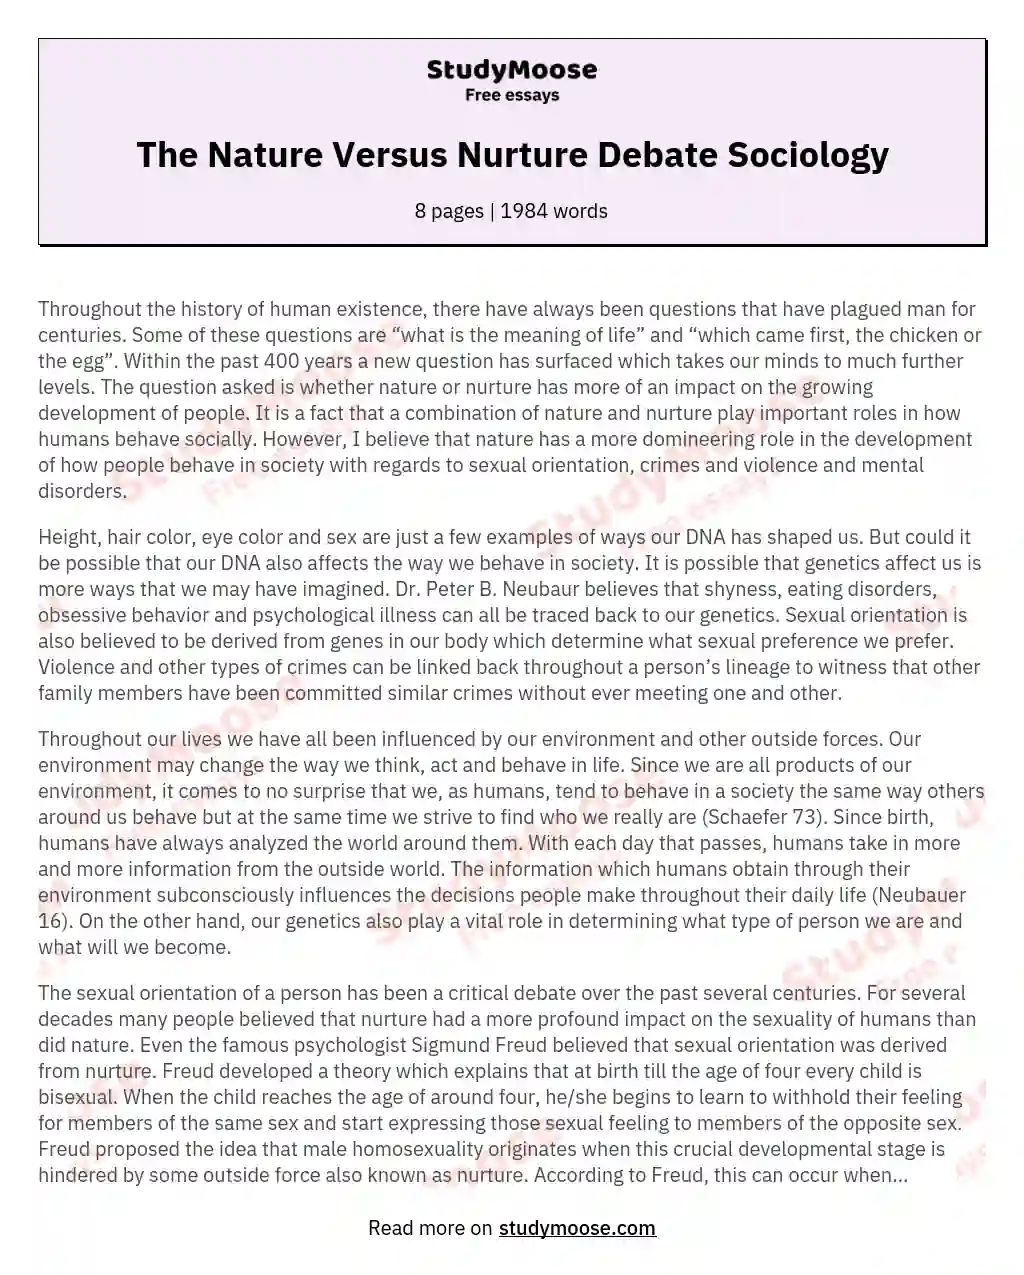 The Nature Versus Nurture Debate Sociology